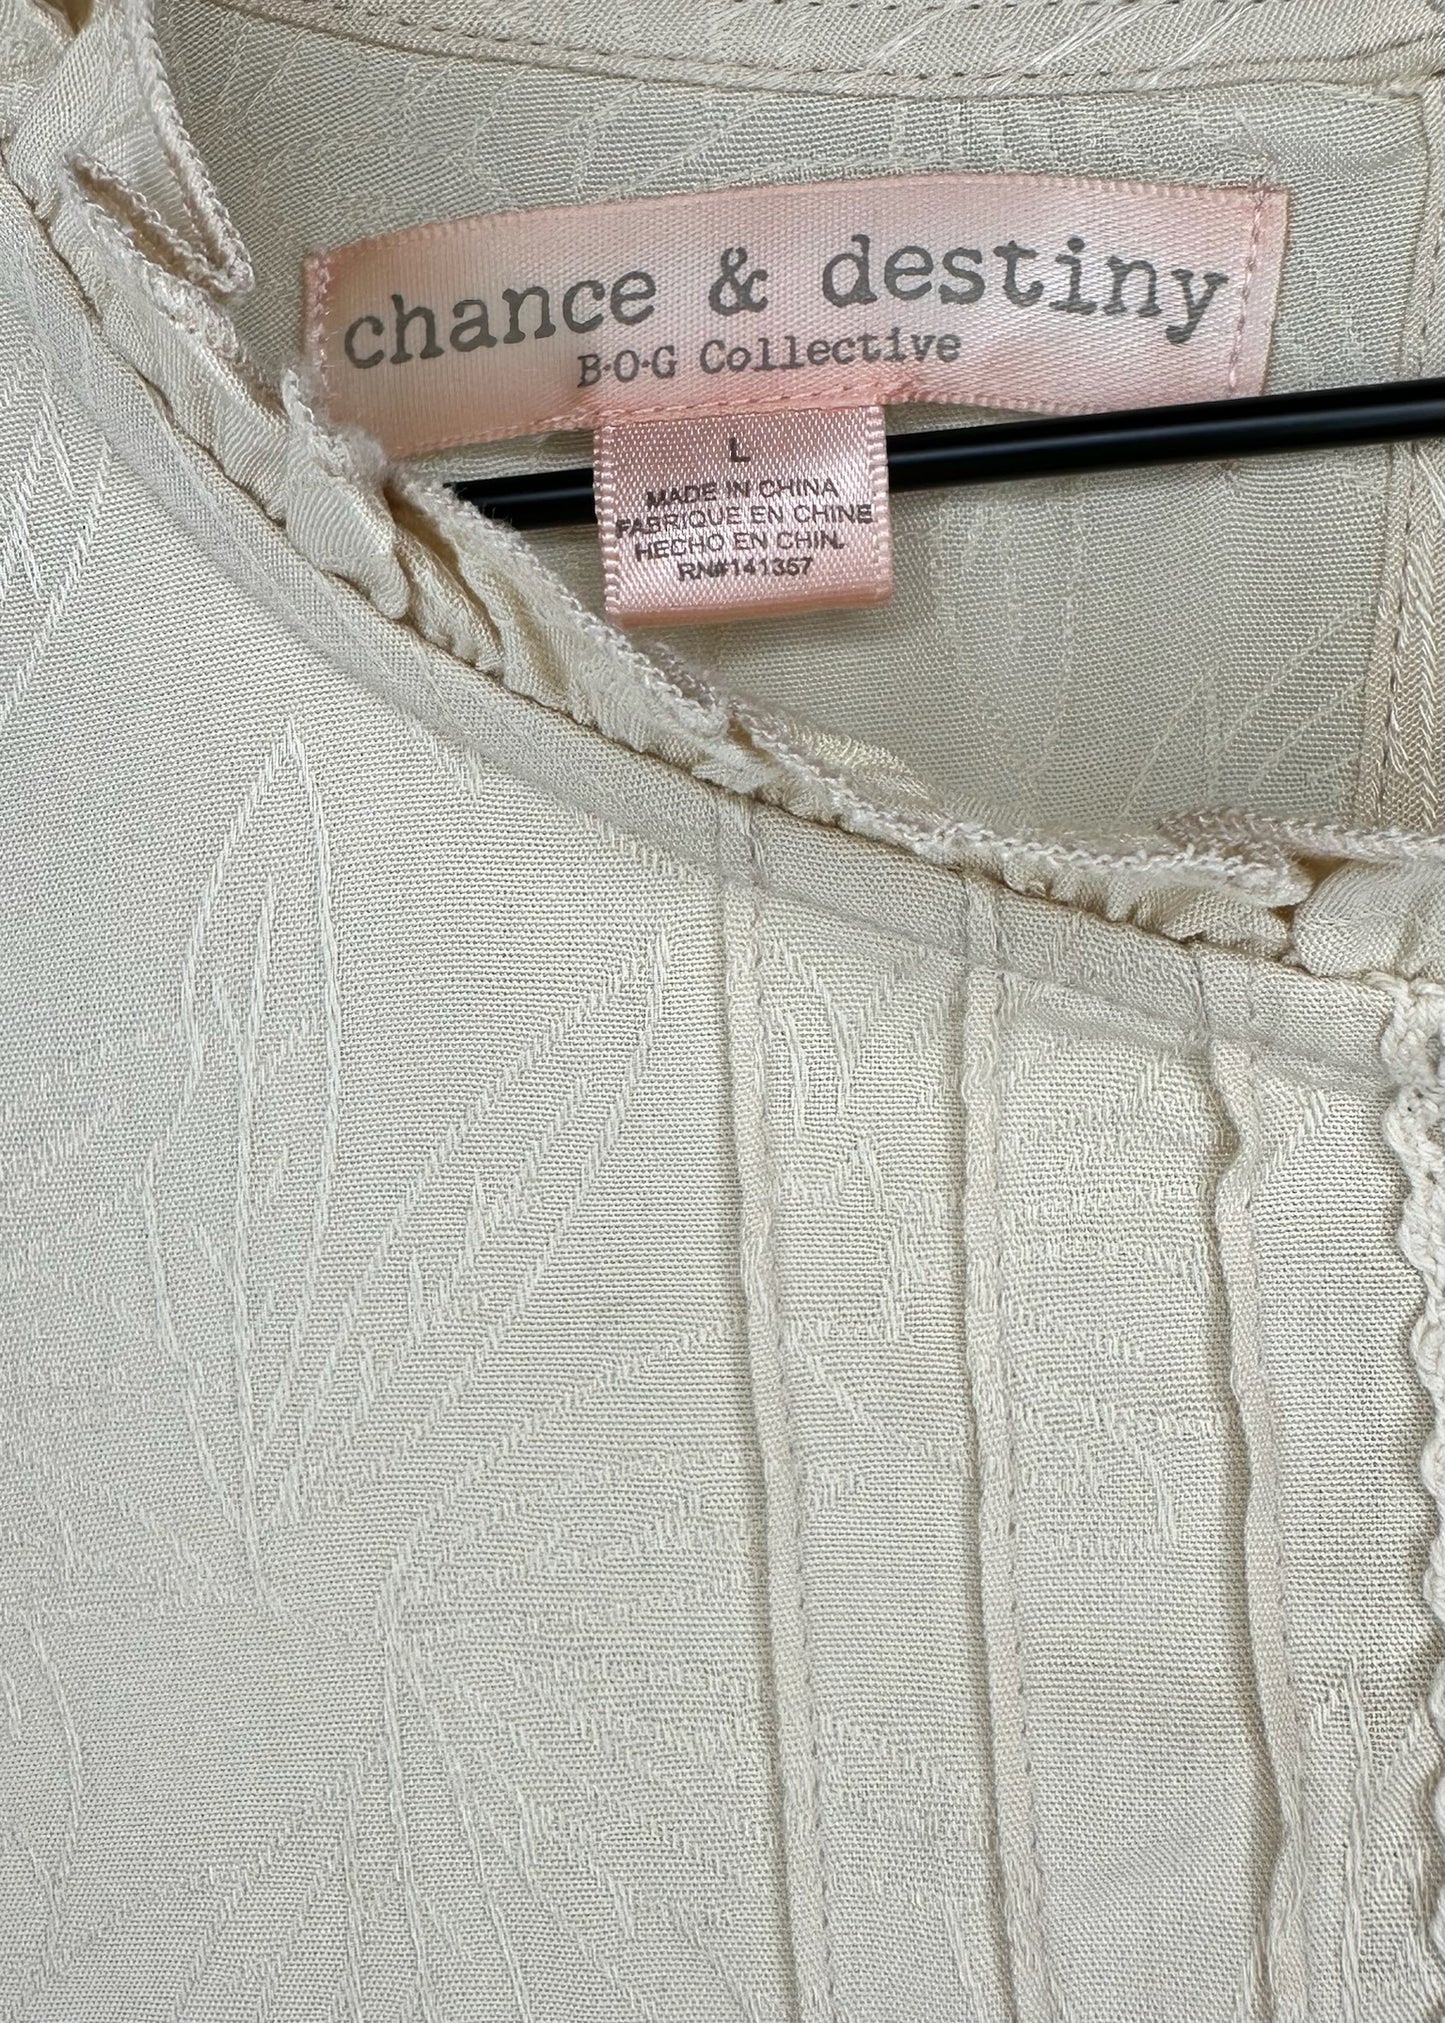 Lace Blouse by Chance & Destiny